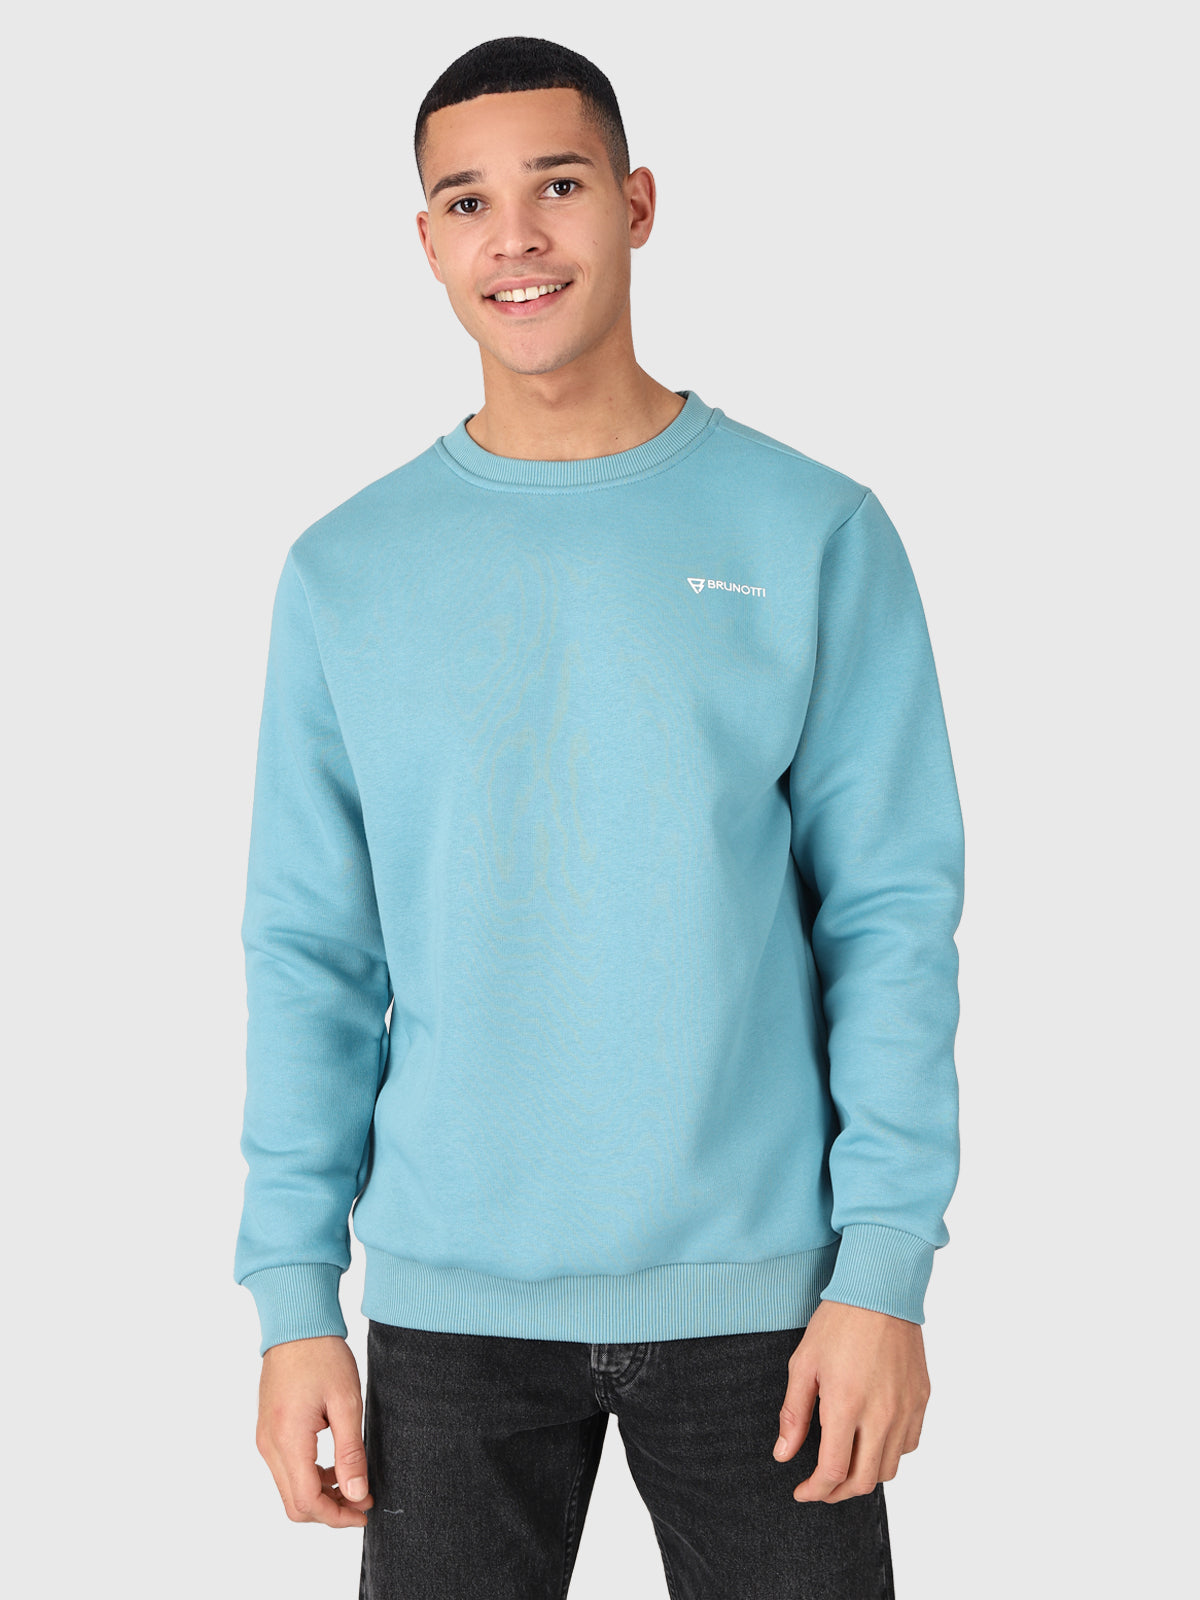 Natch-R Herren Sweatshirt | Blau